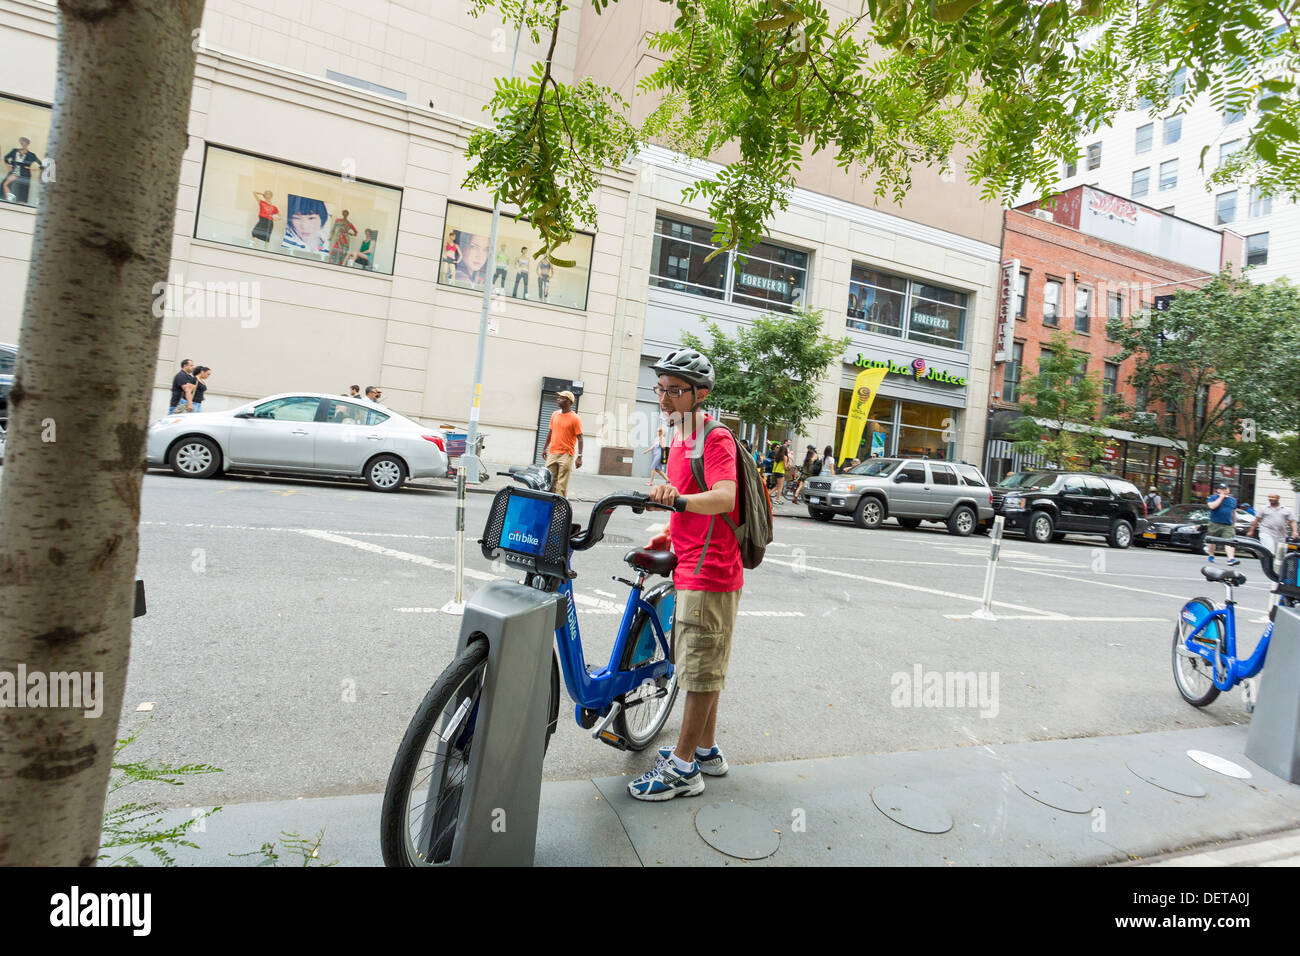 Jeune homme louer un vélo Citi, système de partage de vélos publics à New York City Banque D'Images